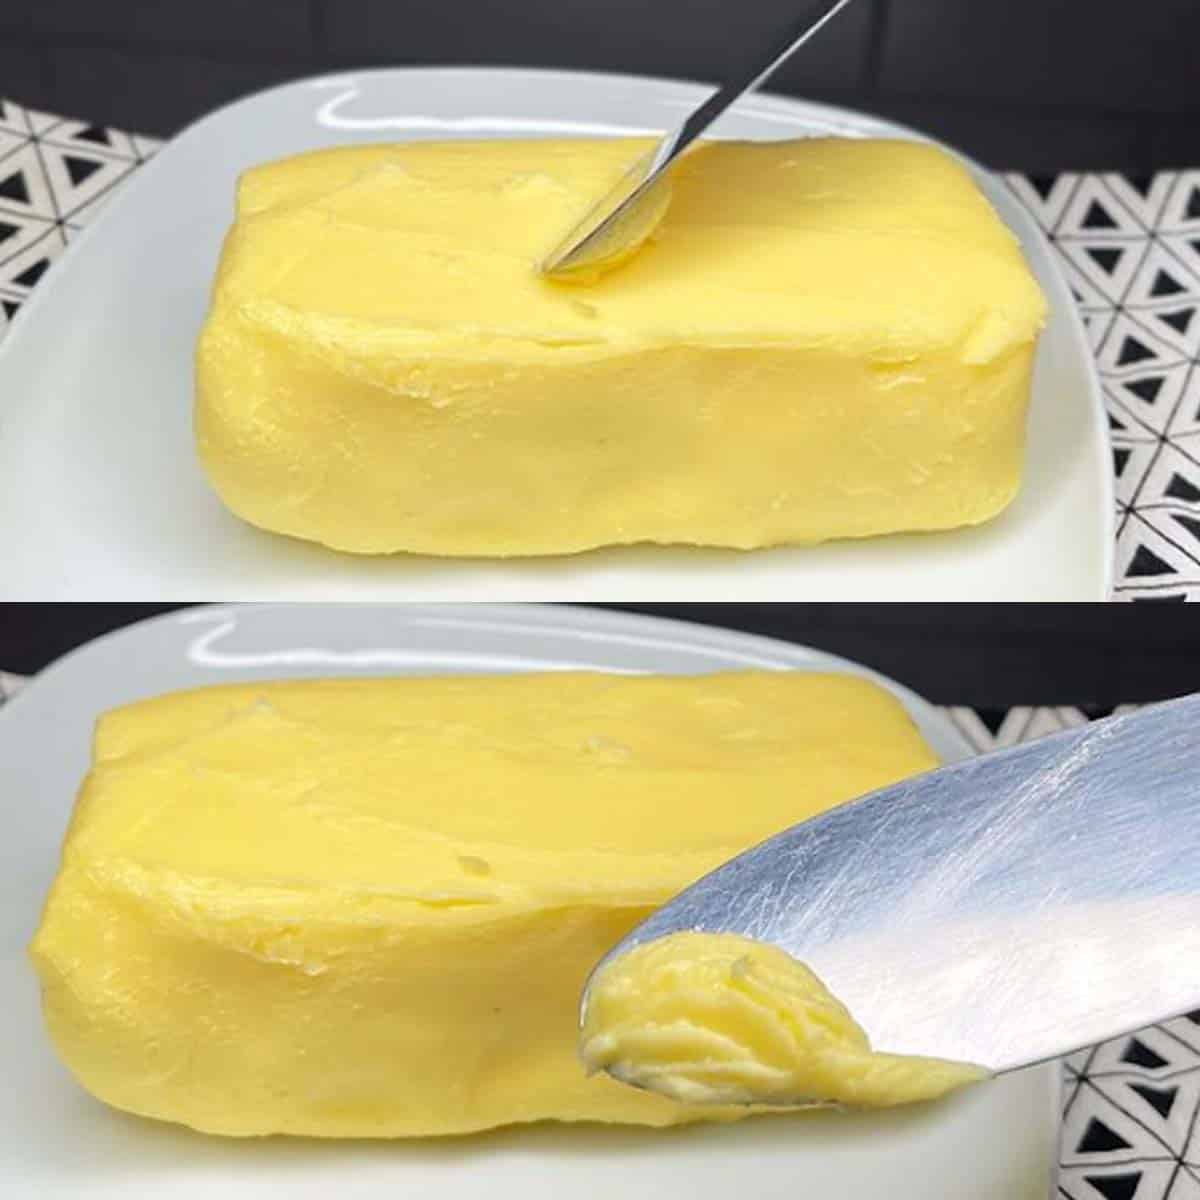 manteiga caseira